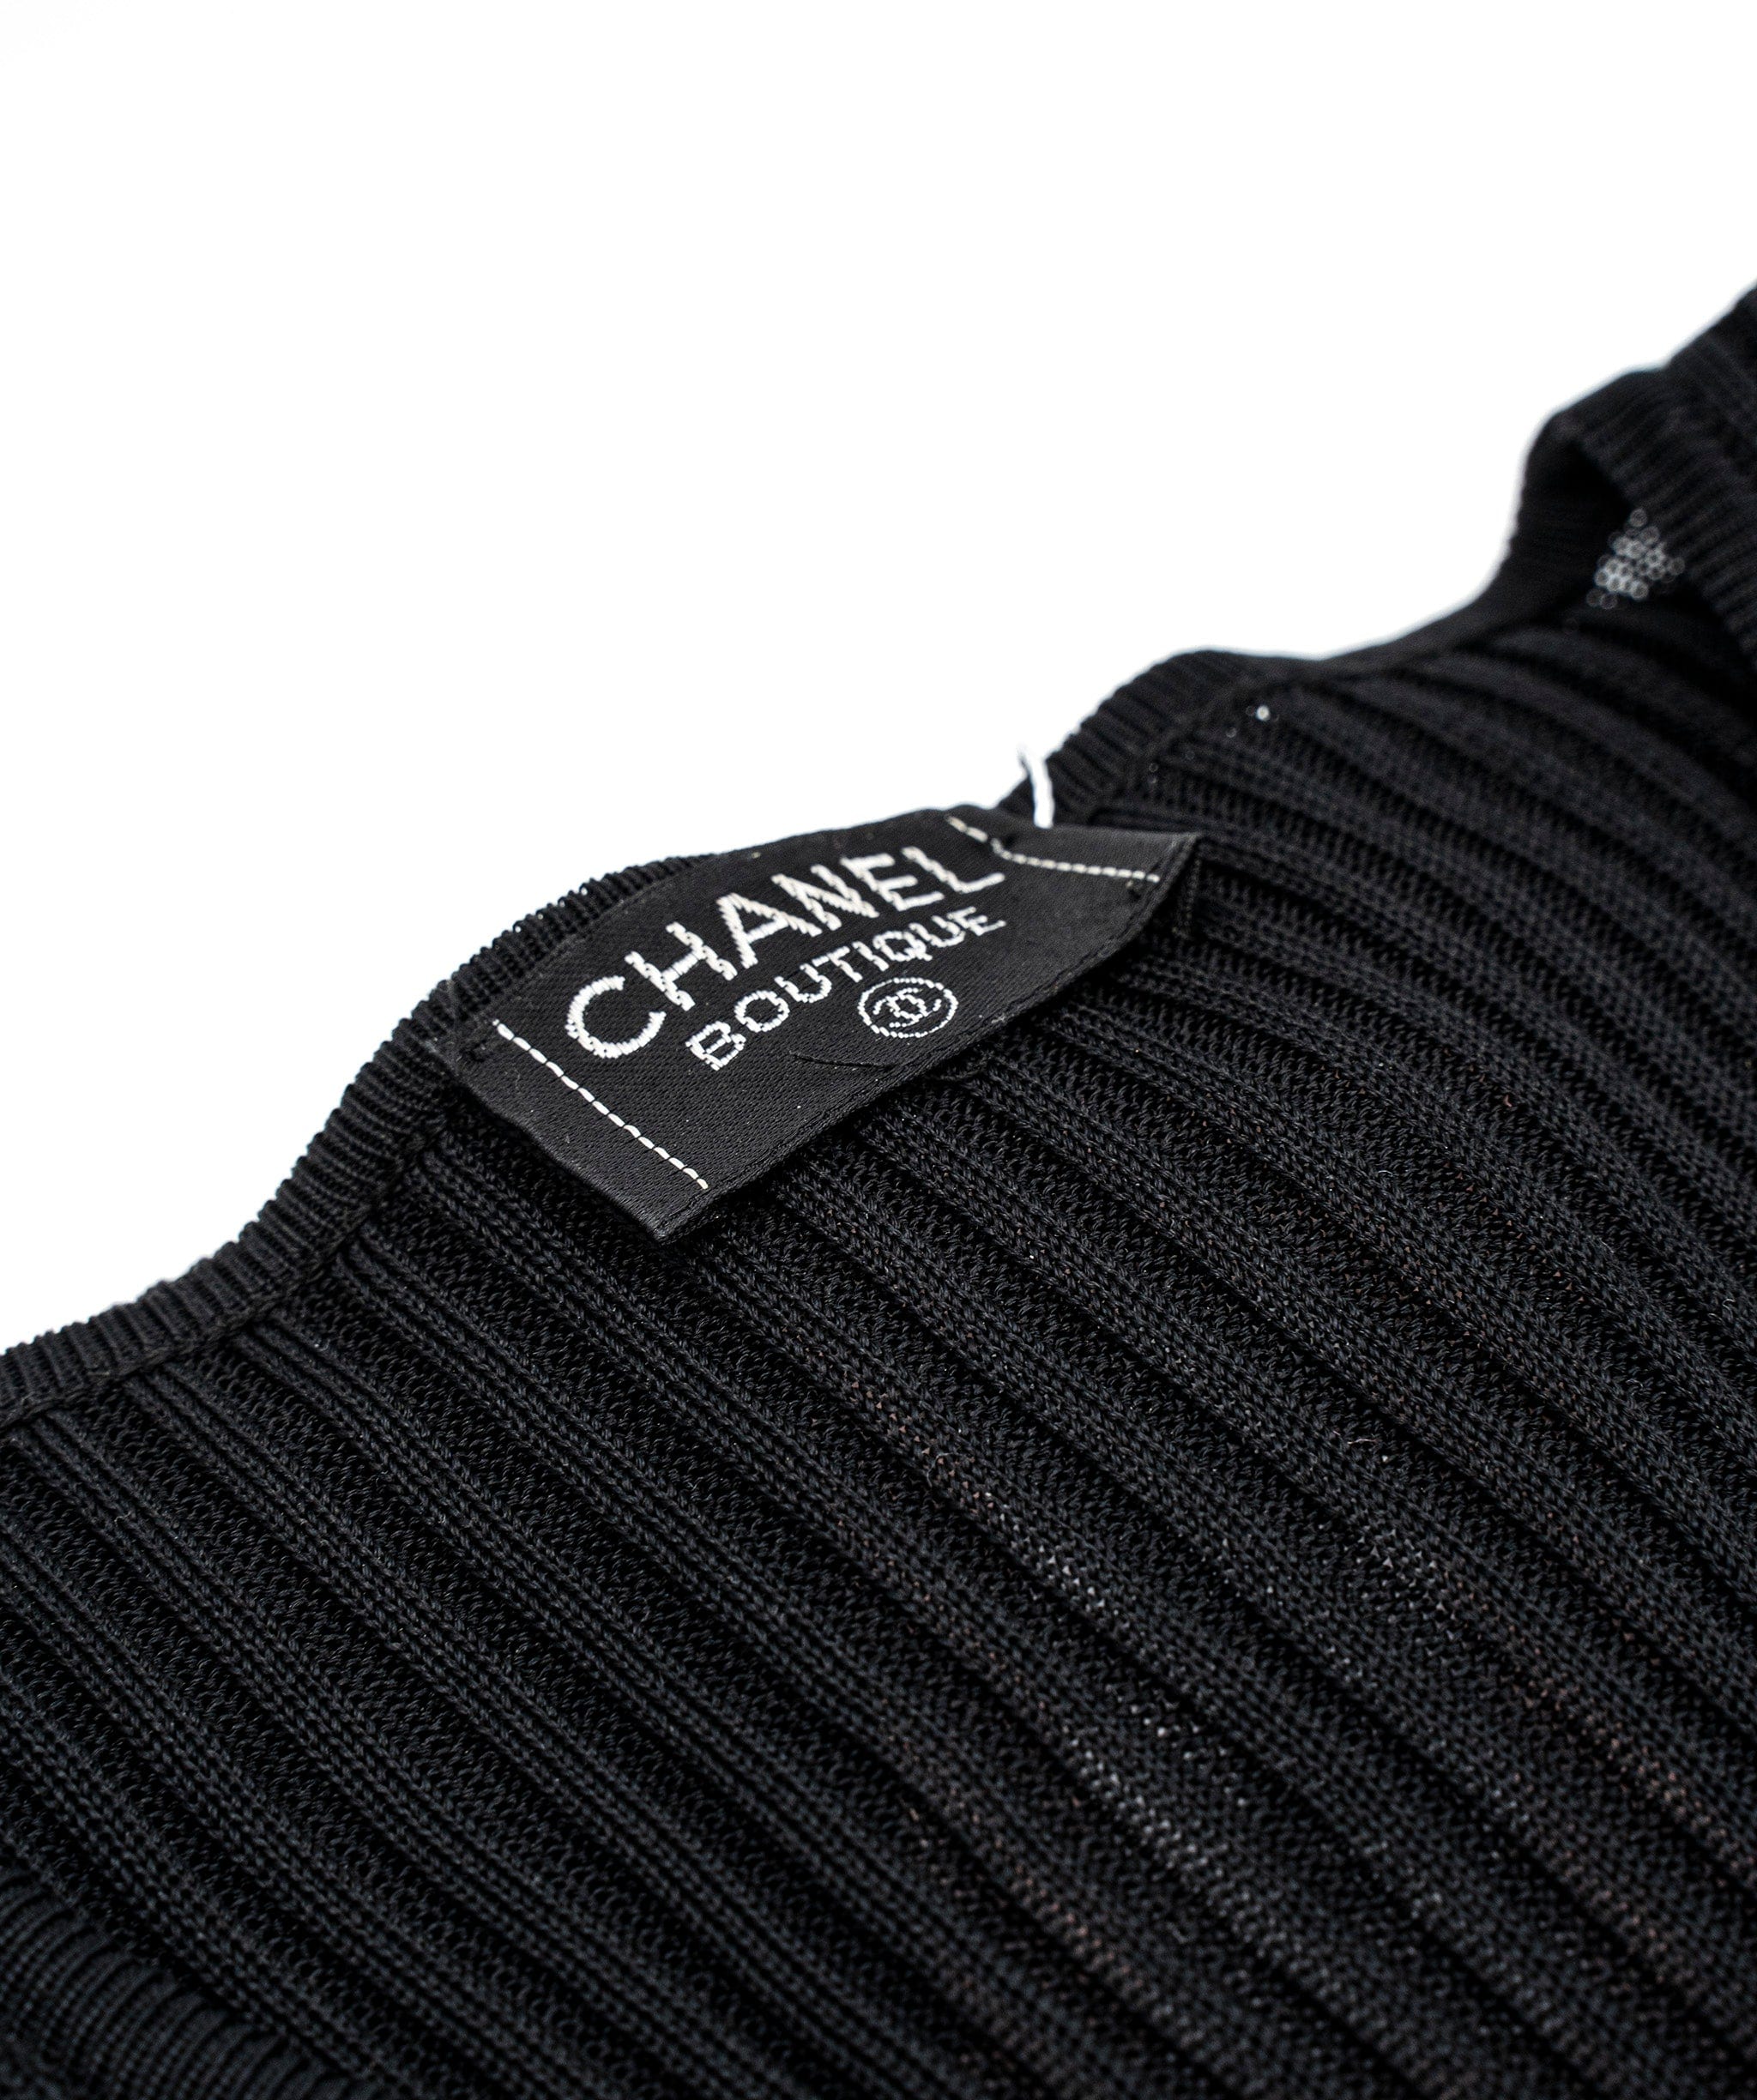 Chanel Chanel Turnlock CC cardigan ALL0160